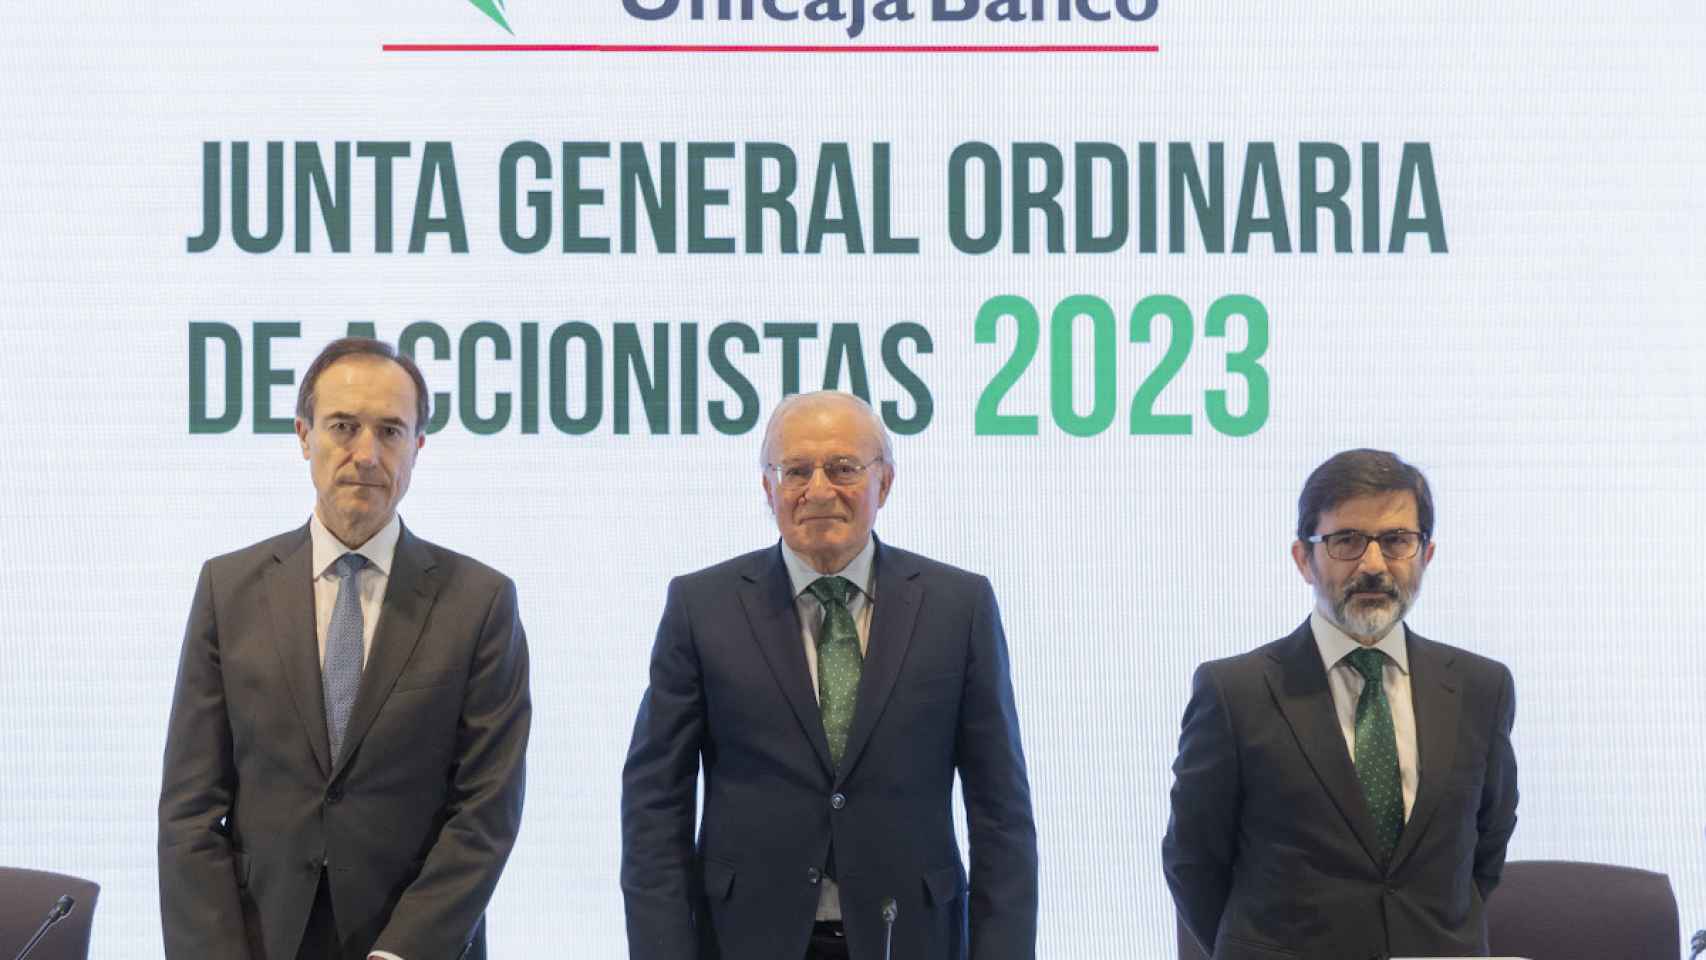 Manuel Menéndez, Consejero Delegado de  Unicaja  Banco;  Manuel  Azuaga, Presidente de Unicaja Banco, y Vicente Orti, Vicesecretario no consejero del Consejo de Administración.